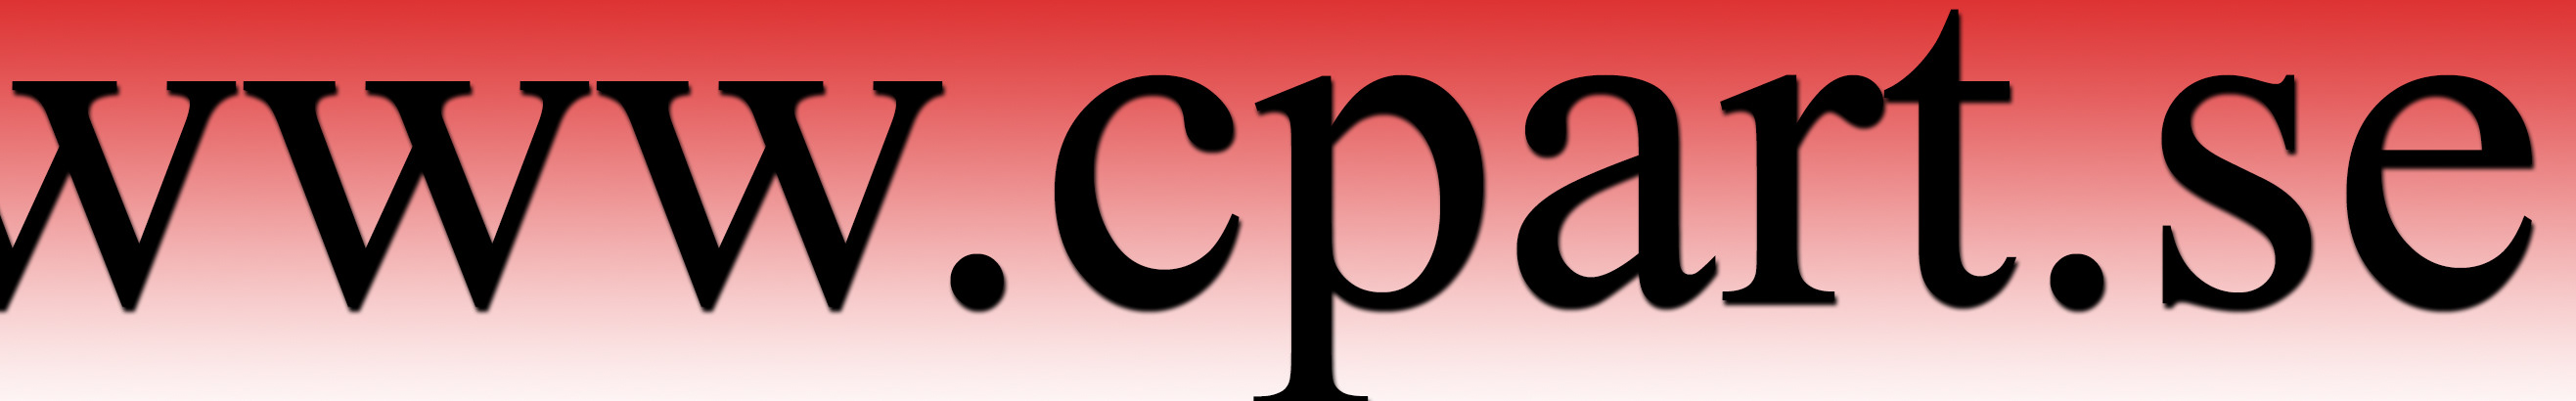 cp art's profile banner